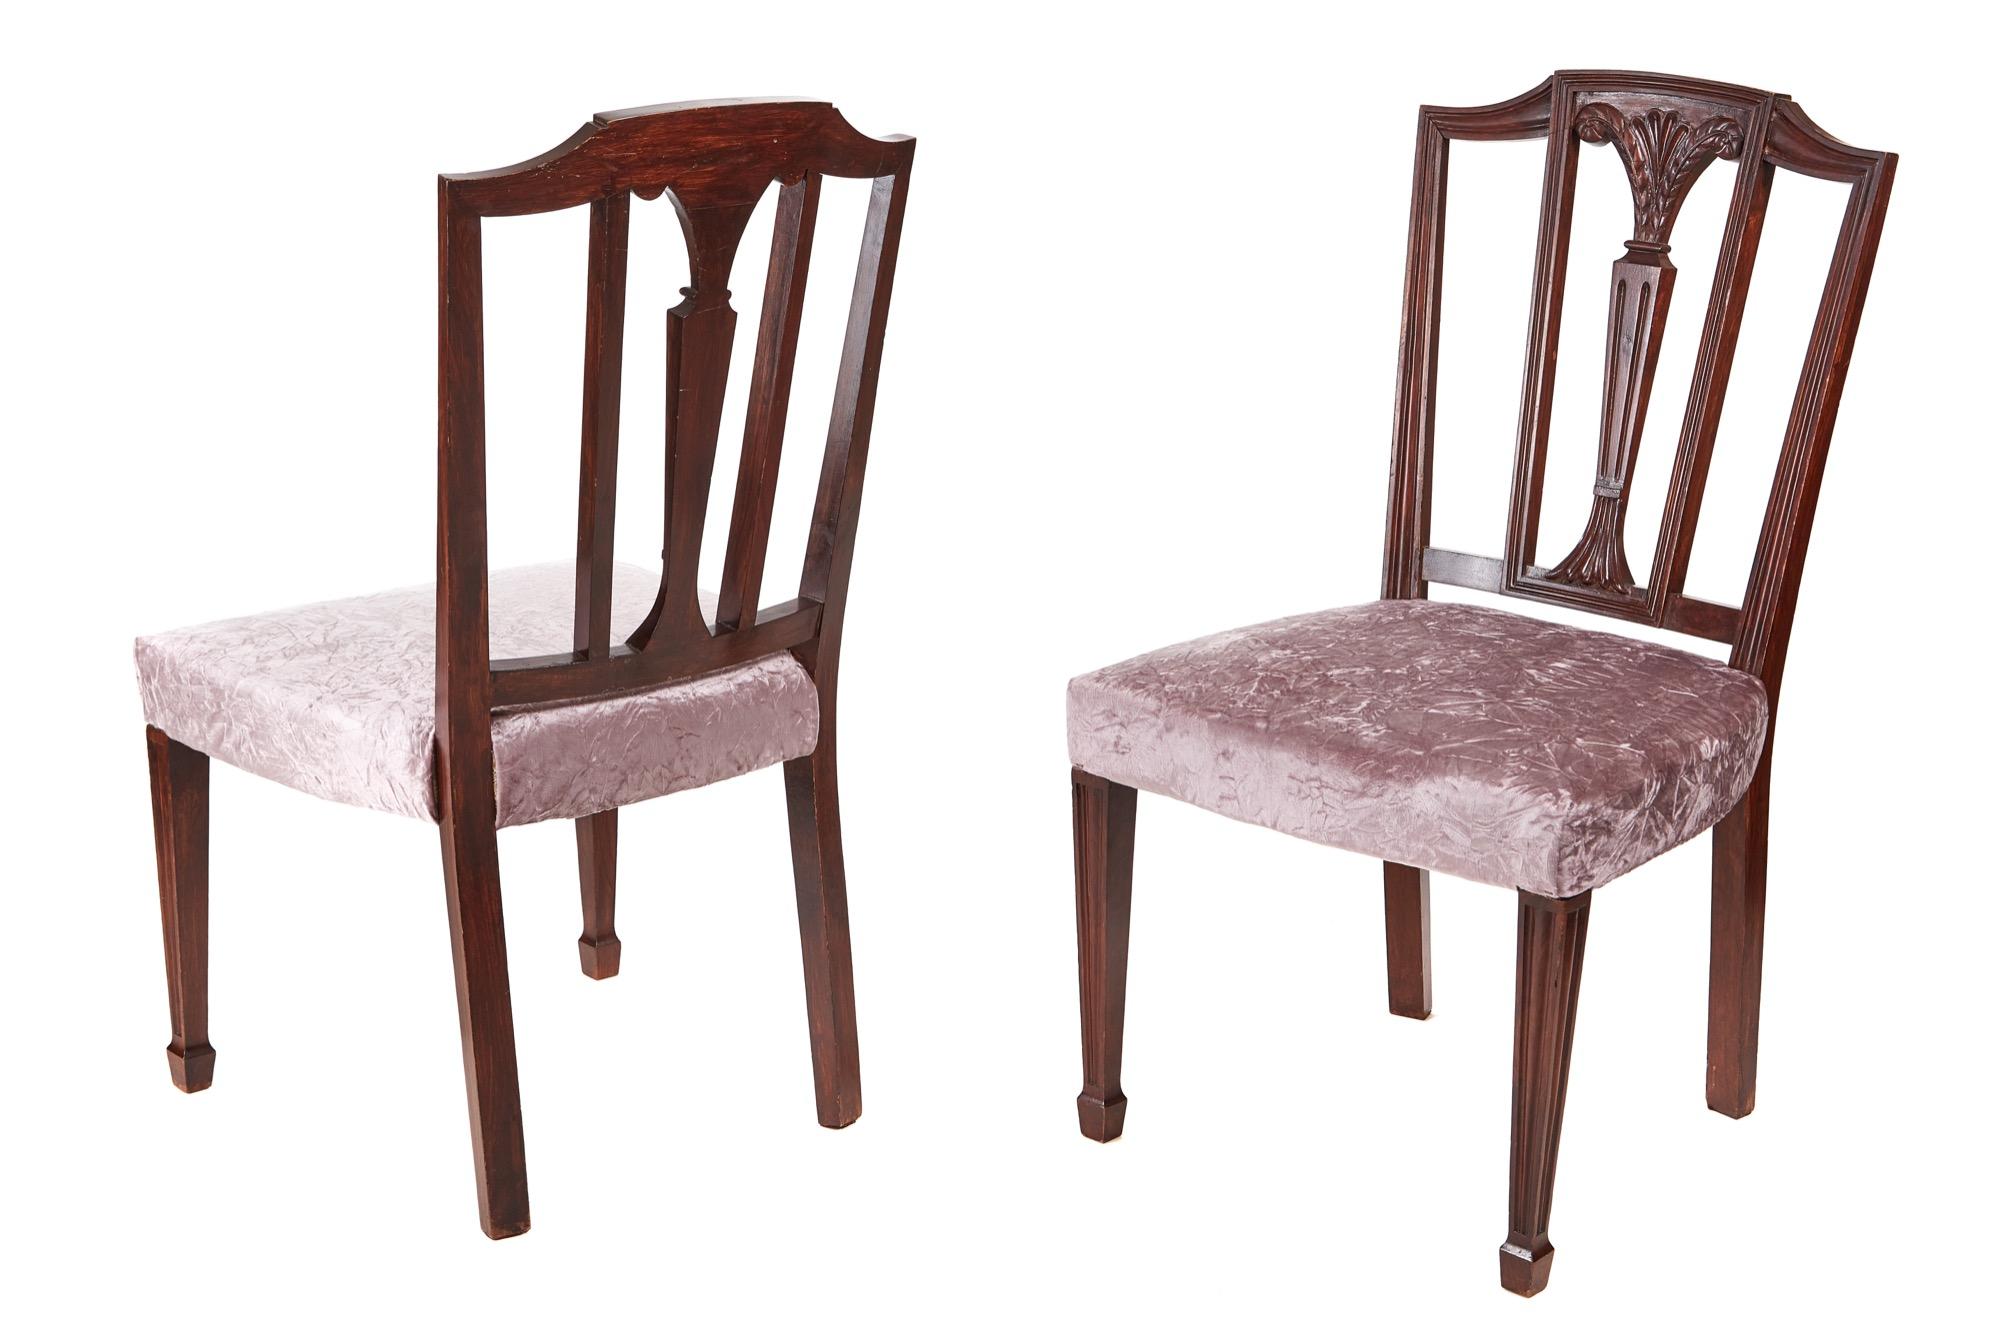 Il s'agit d'une paire de chaises latérales de style Hepplewhite en acajou ancien du 19e siècle, avec une traverse supérieure profilée et un panneau central sculpté et cannelé. Les sièges ont été retapissés. Ils reposent sur des pieds antérieurs